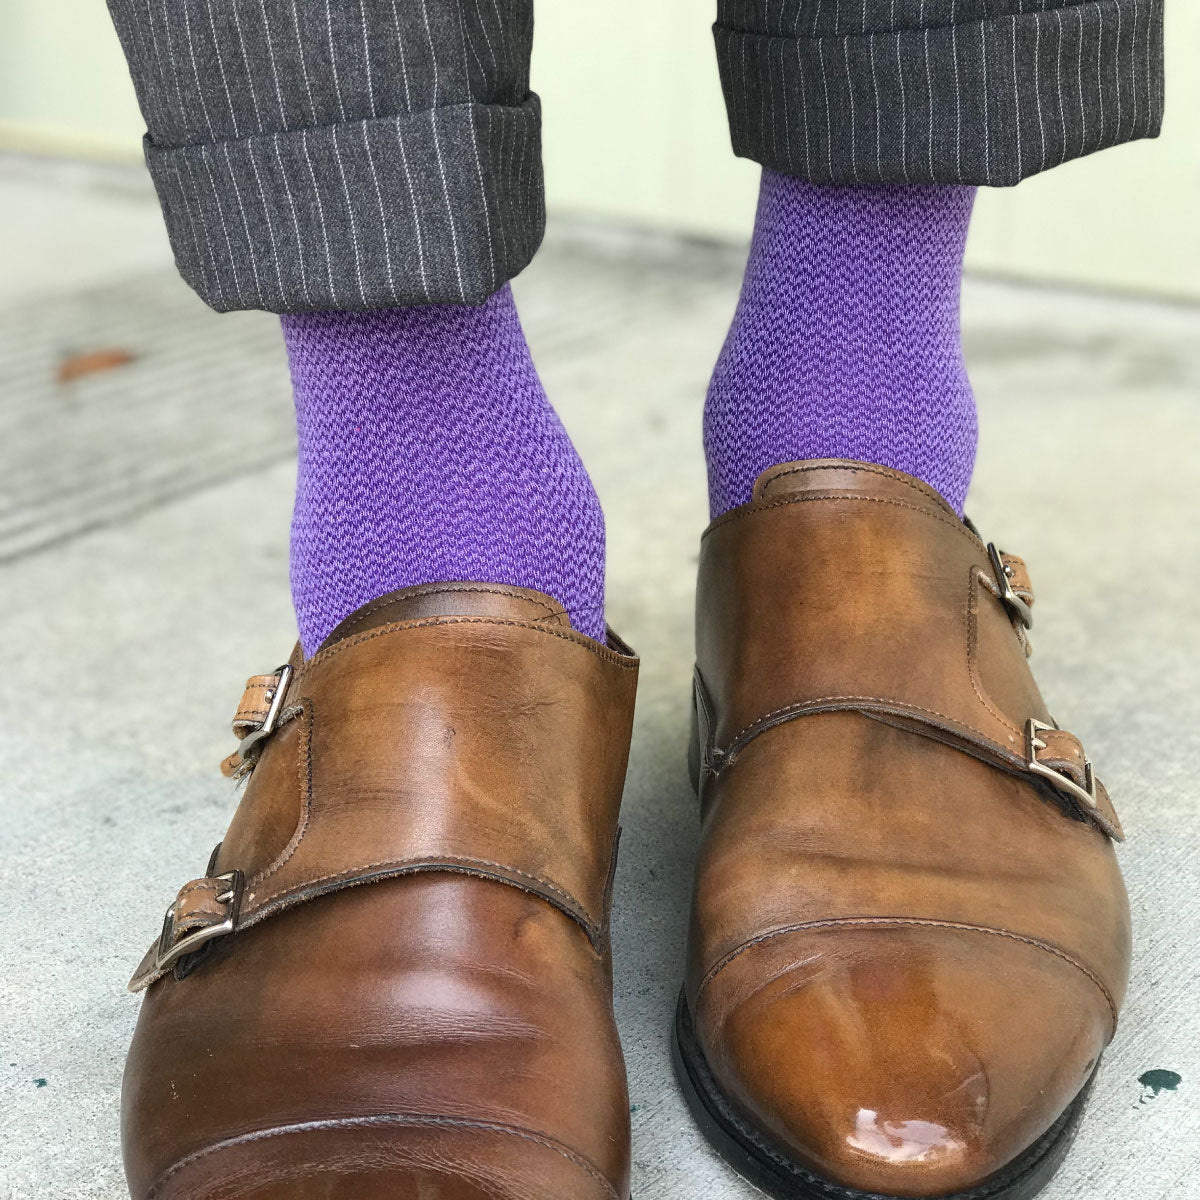 man wearing purple business socks